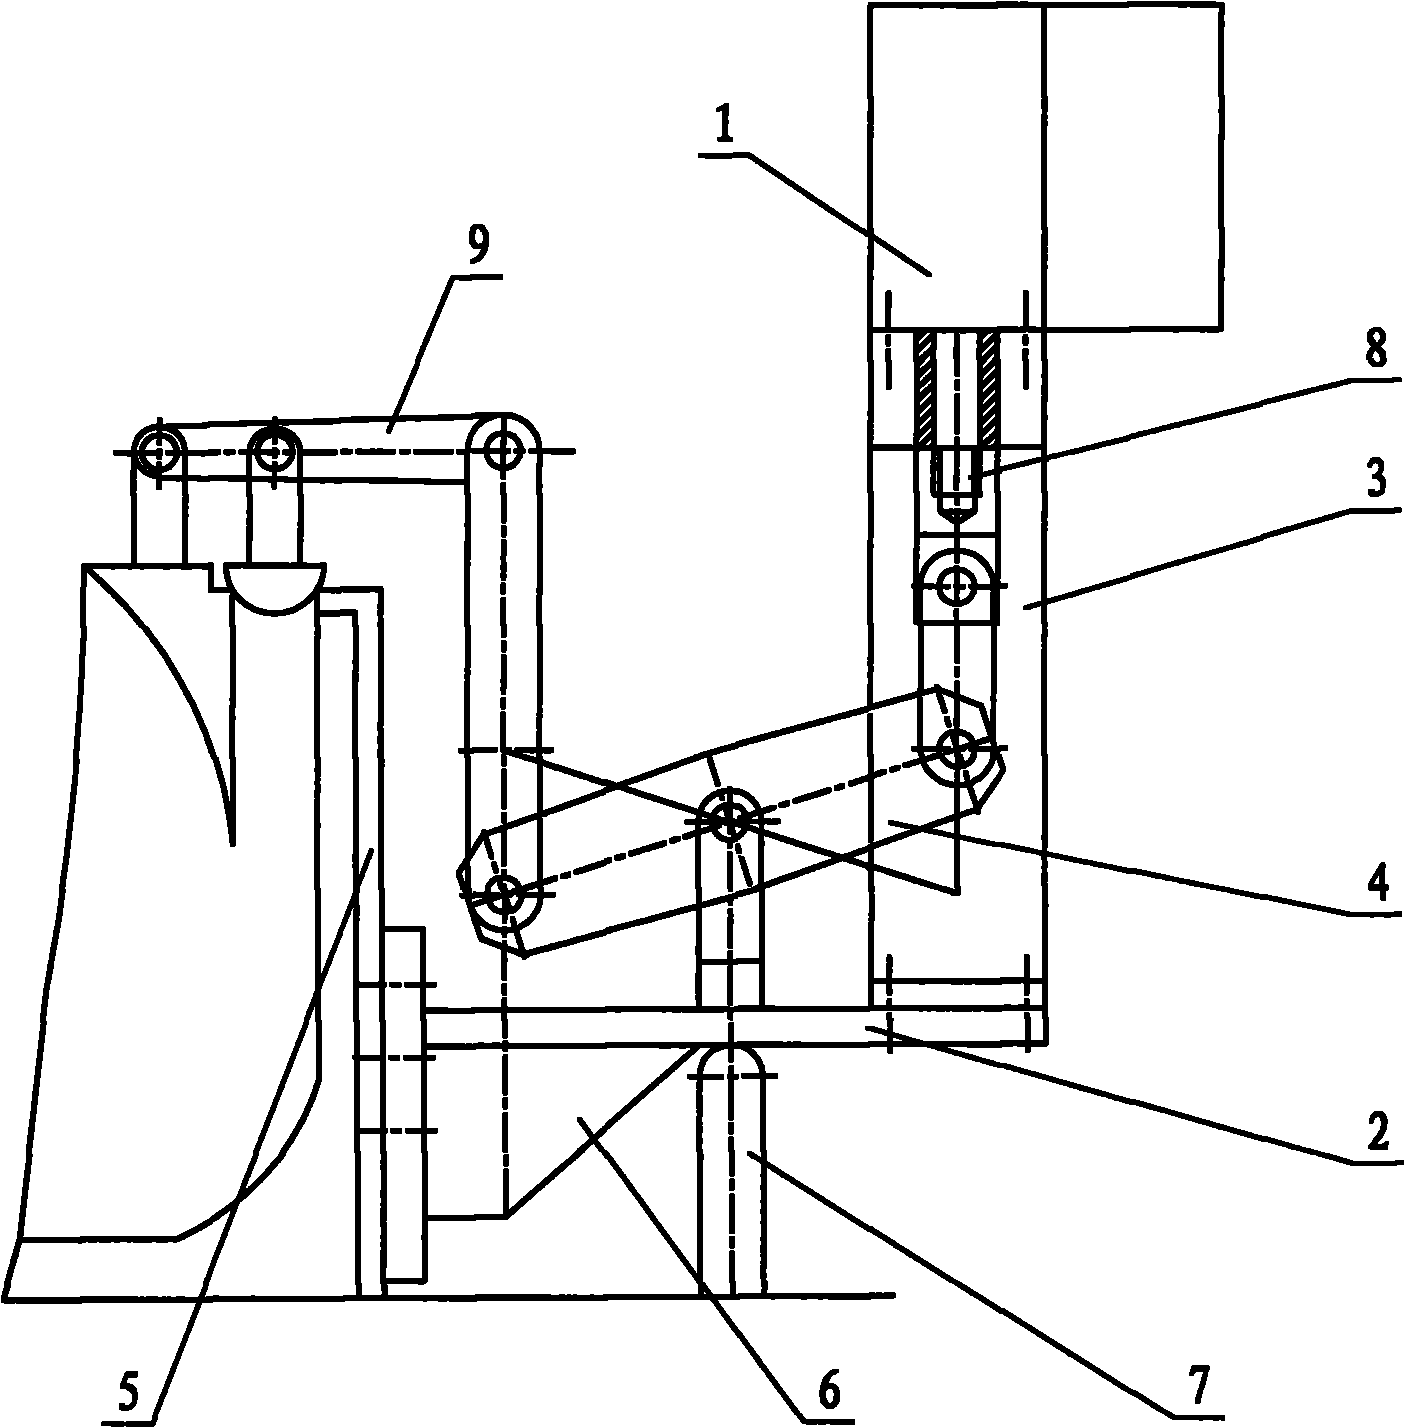 Fixed form of hydraulic servomotor in electro-hydraulic control system